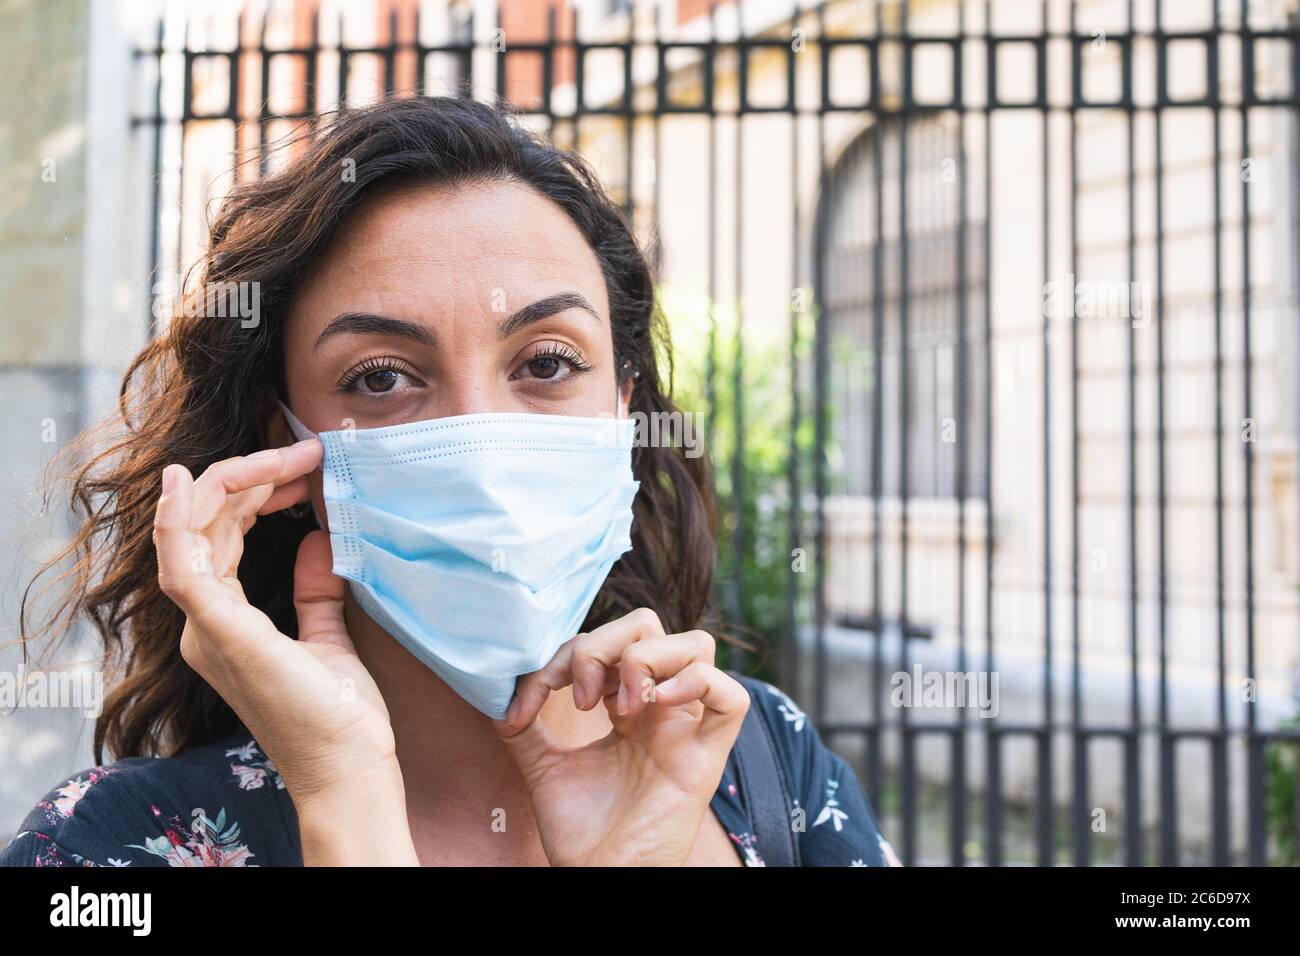 Giovane donna che si è indossata una maschera chirurgica per la strada per proteggersi e adottare misure igieniche di sicurezza. Concetto di protezione e sicurezza Foto Stock